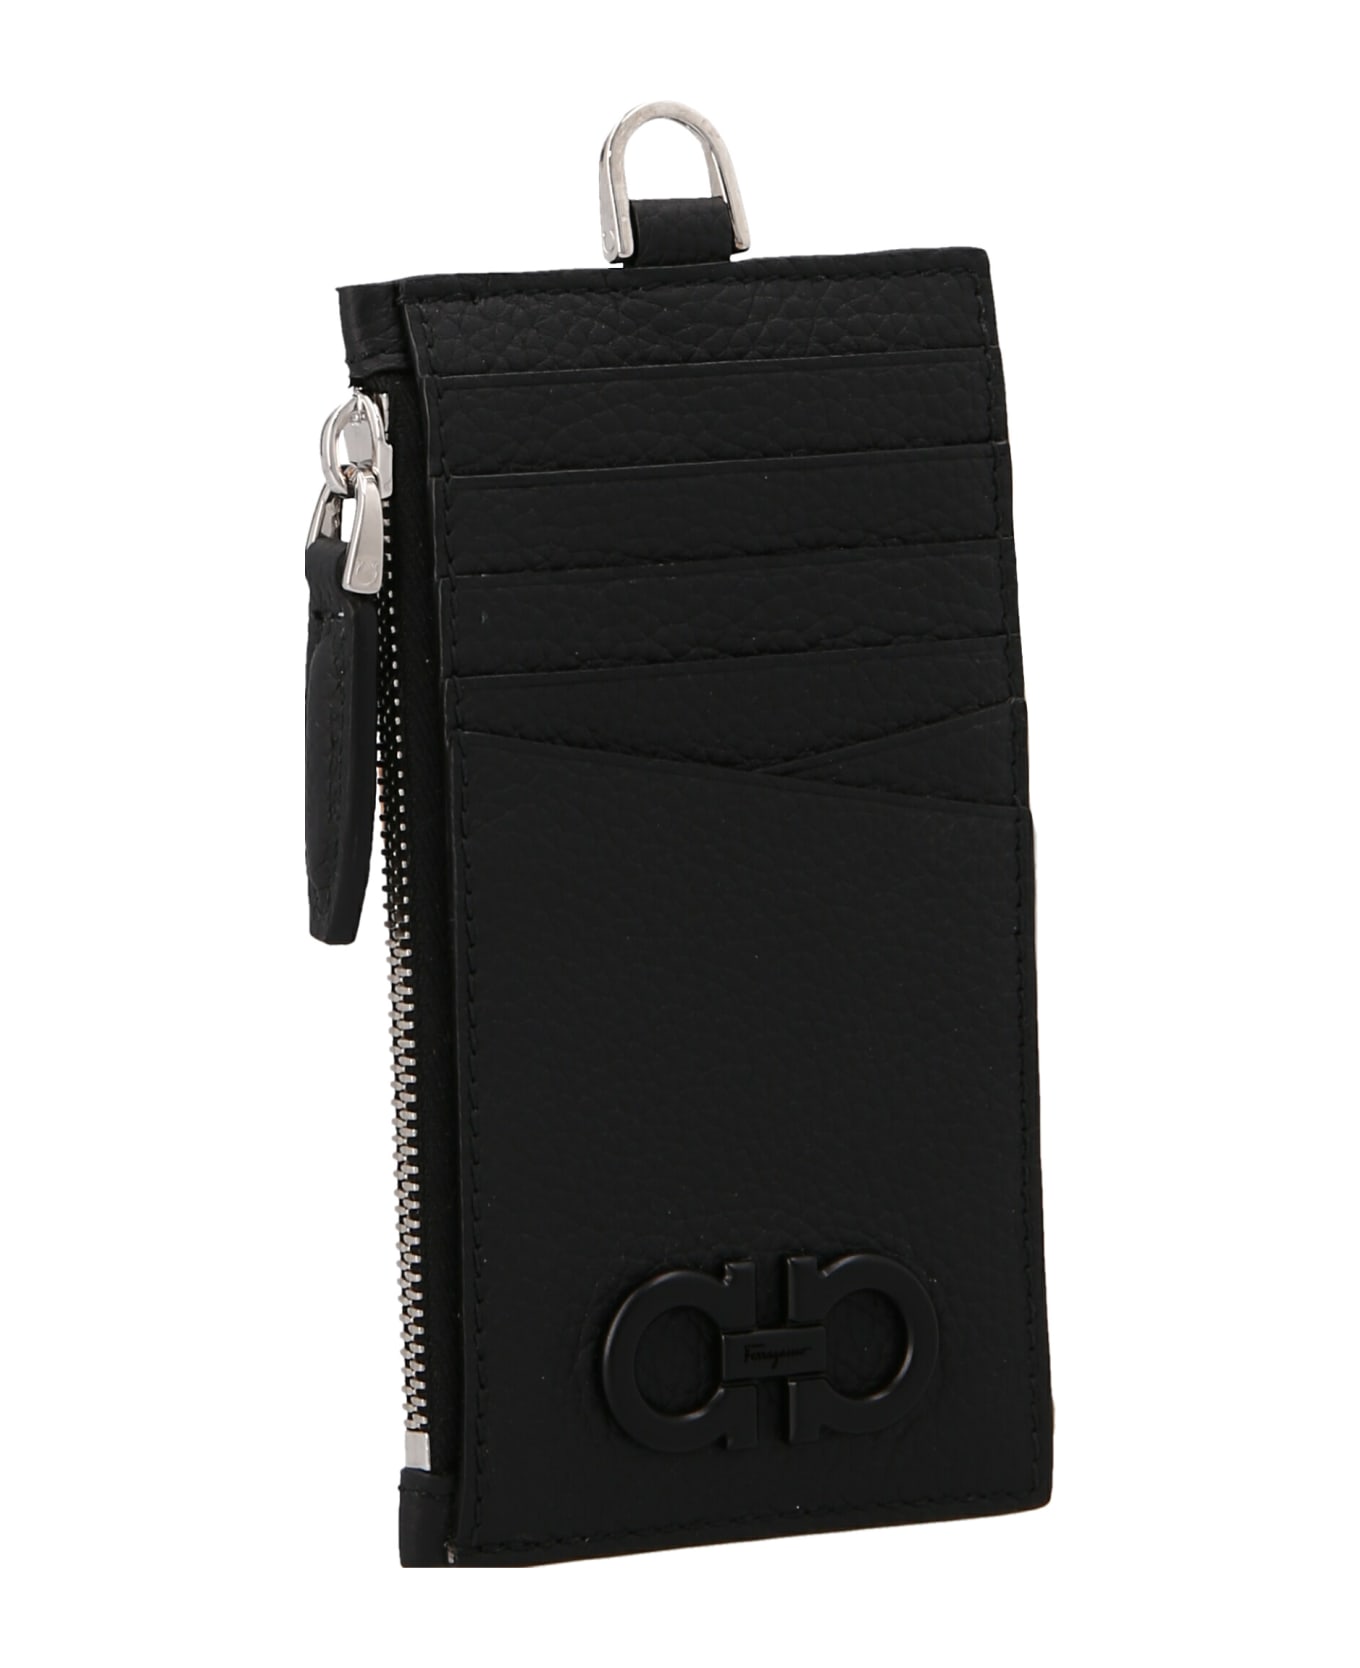 Ferragamo 'gancio' Card Holder With A Shoulder Strap - Black  